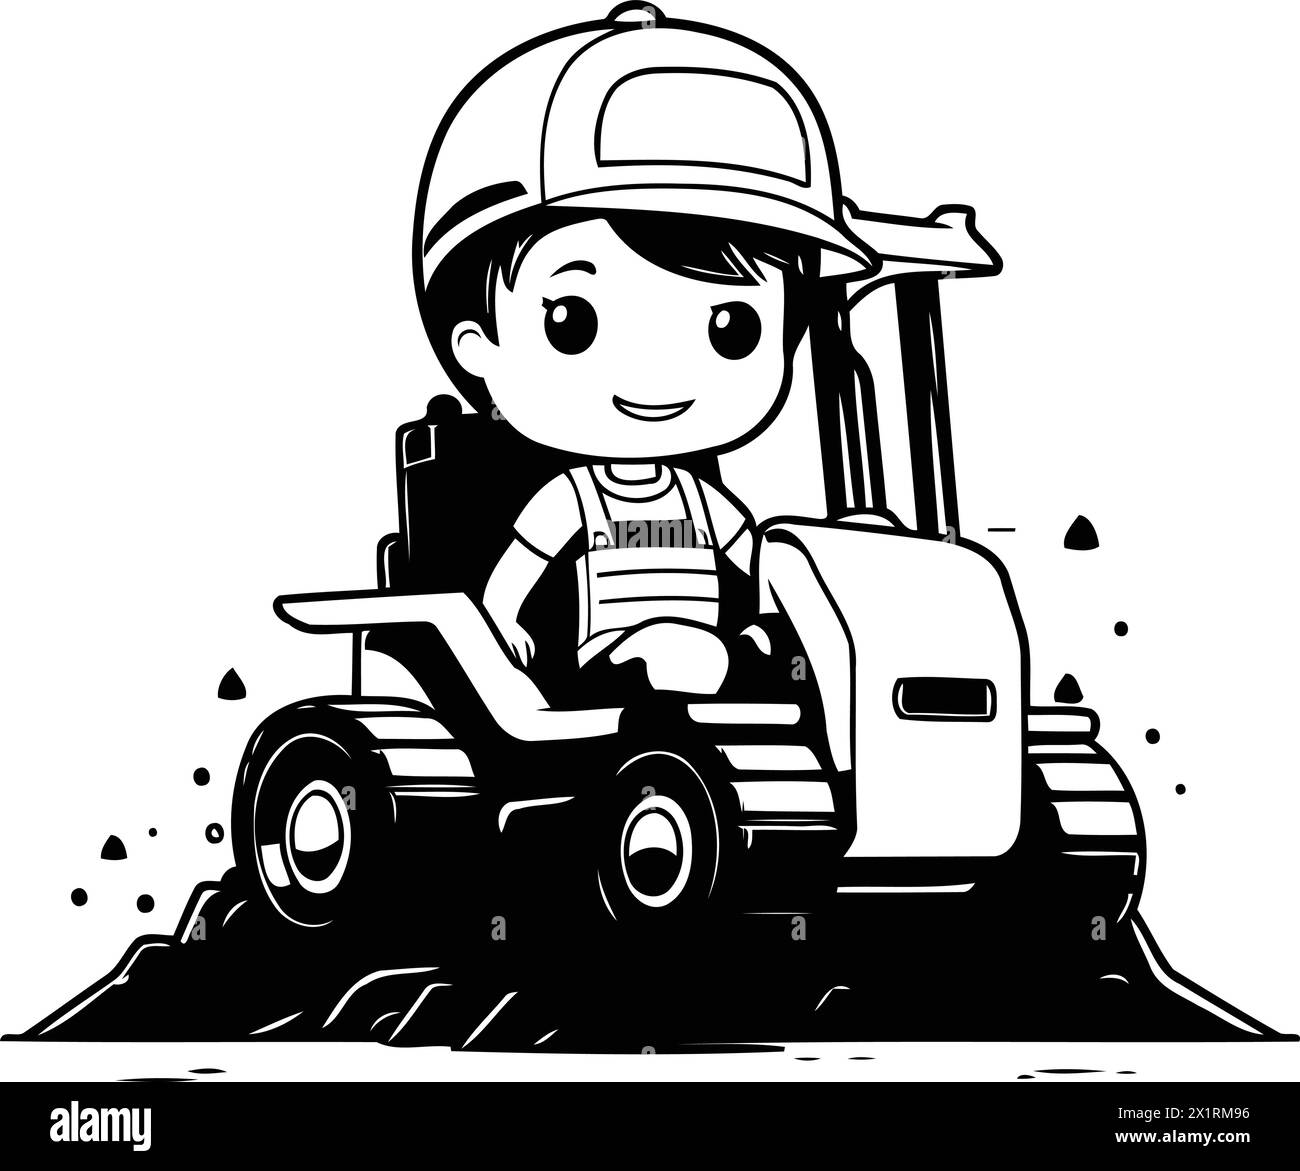 Süßer kleiner Junge, der einen Bulldozer fährt. Vektor-Zeichentrick-Illustration. Stock Vektor